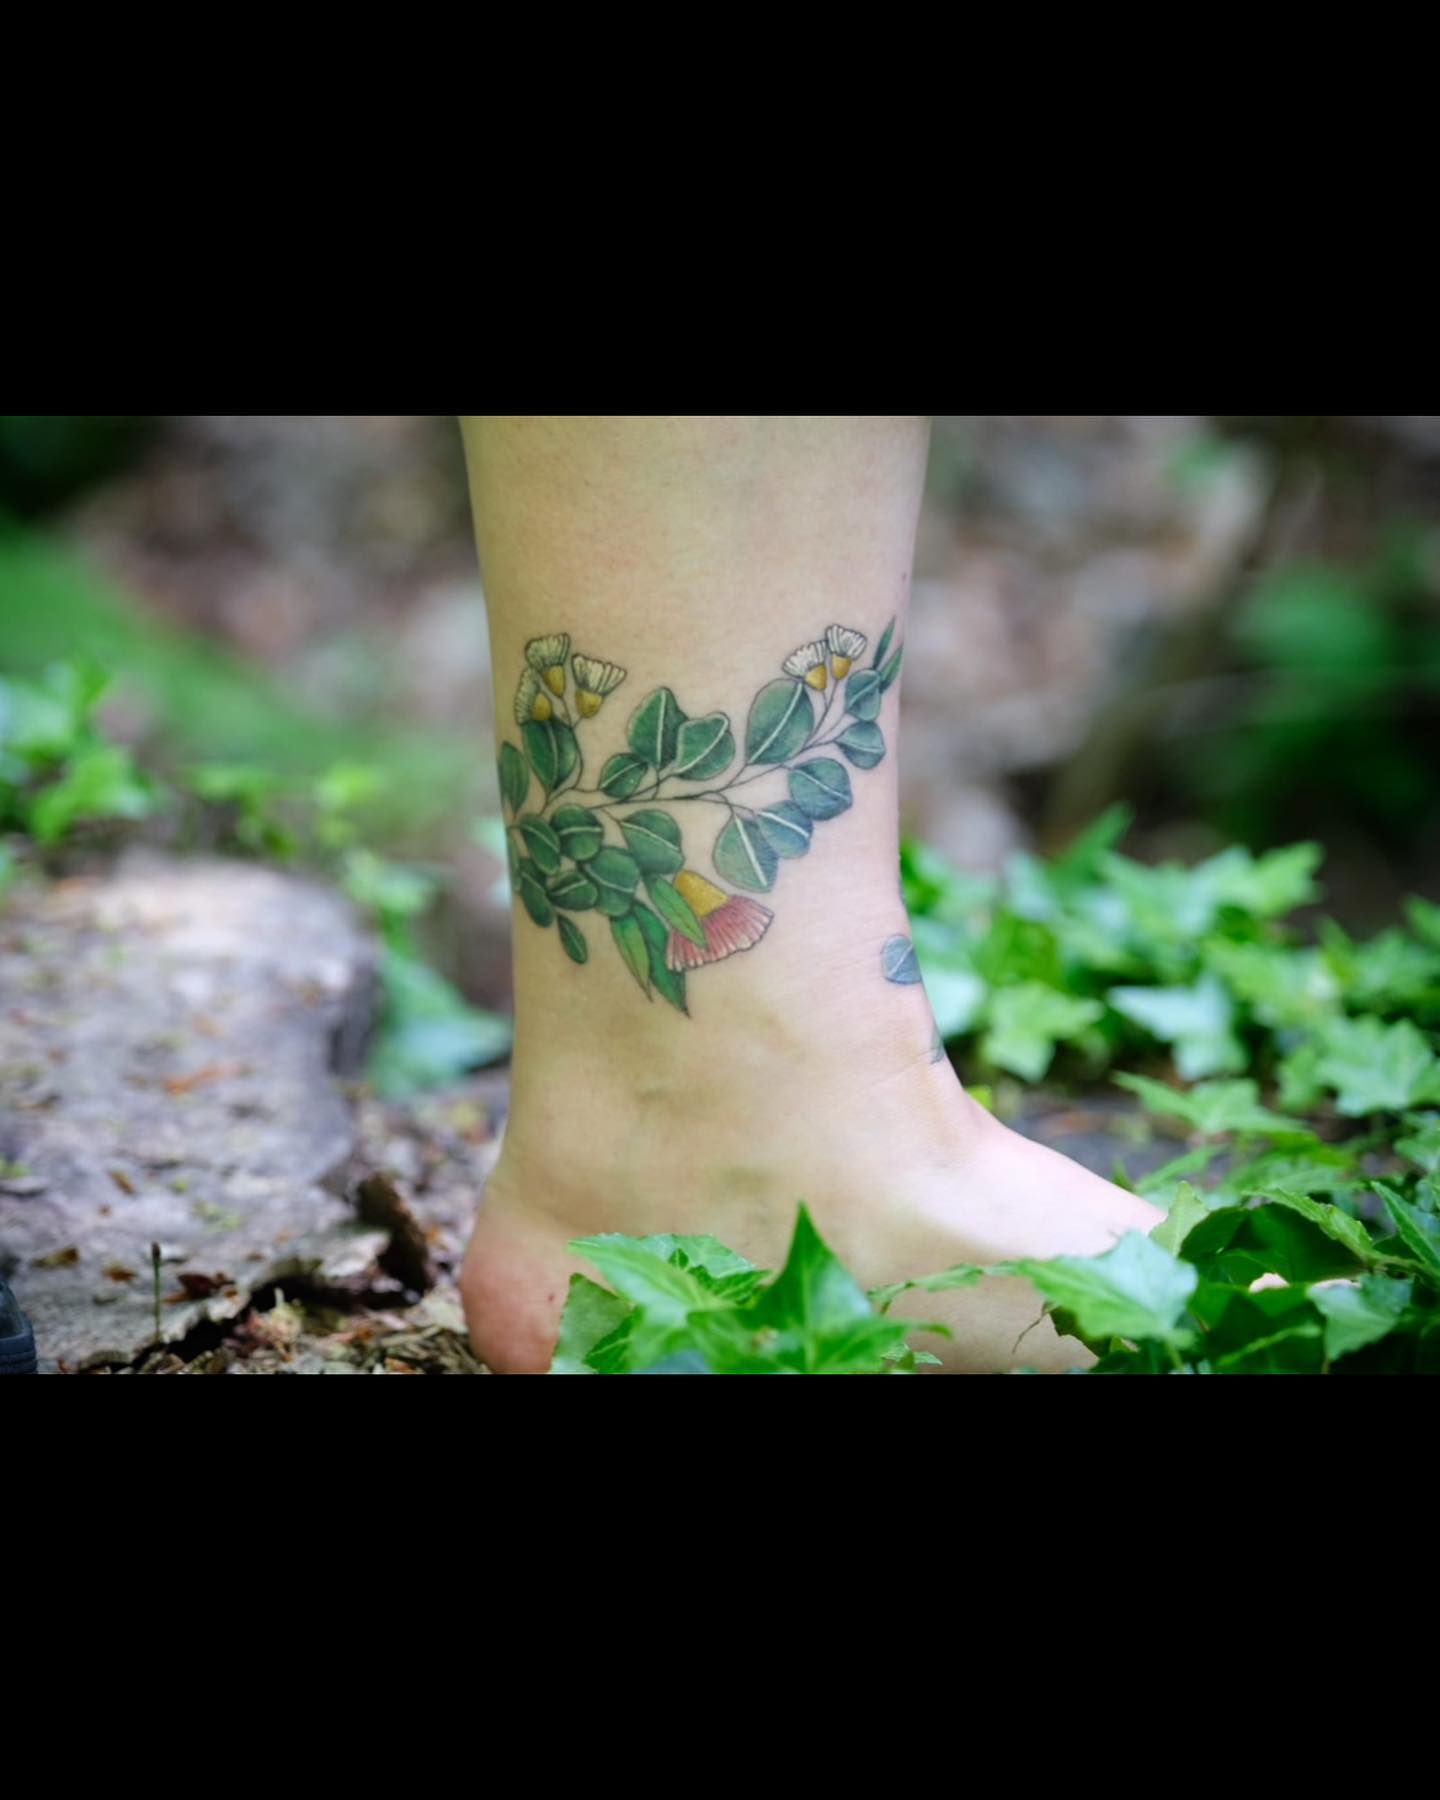 Kleines, verheiltes Fußband im Wald  Danke für das schöne Foto Jutta! 
•
•
•
•
#